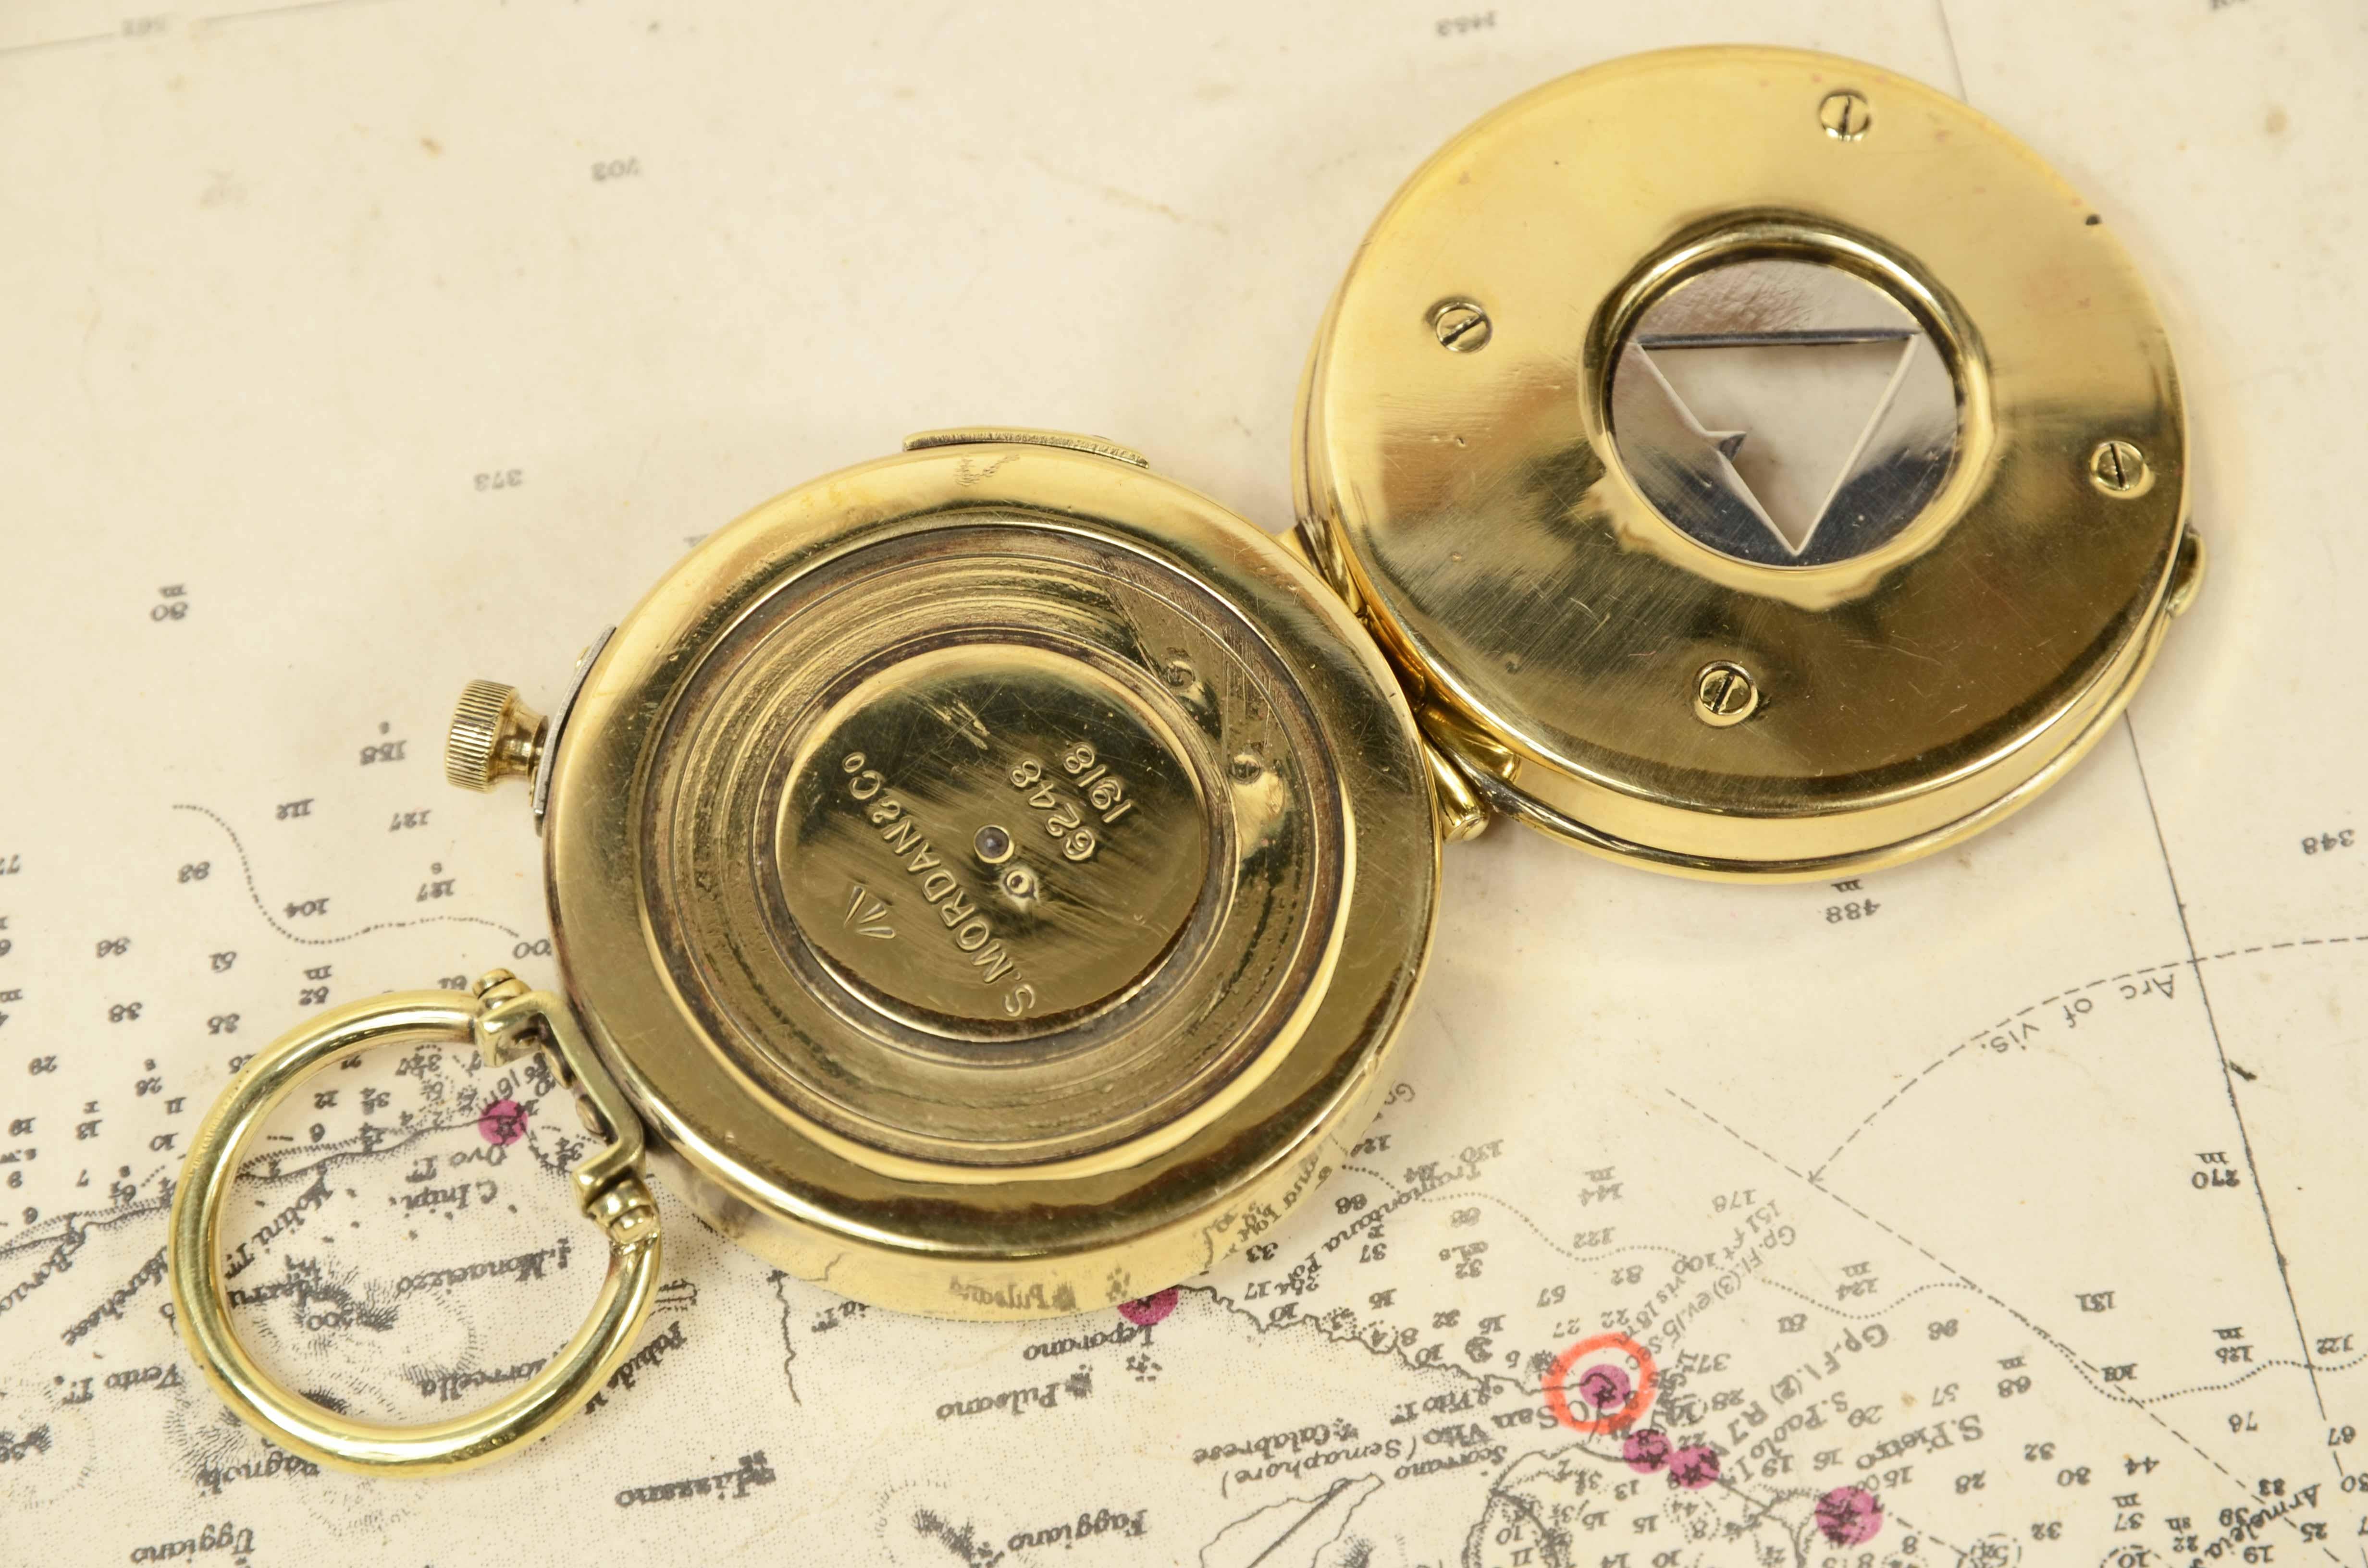 Bussola nautica da tasca in ottone del 1918  firmata S. Mordan & Co n. 6248. 3